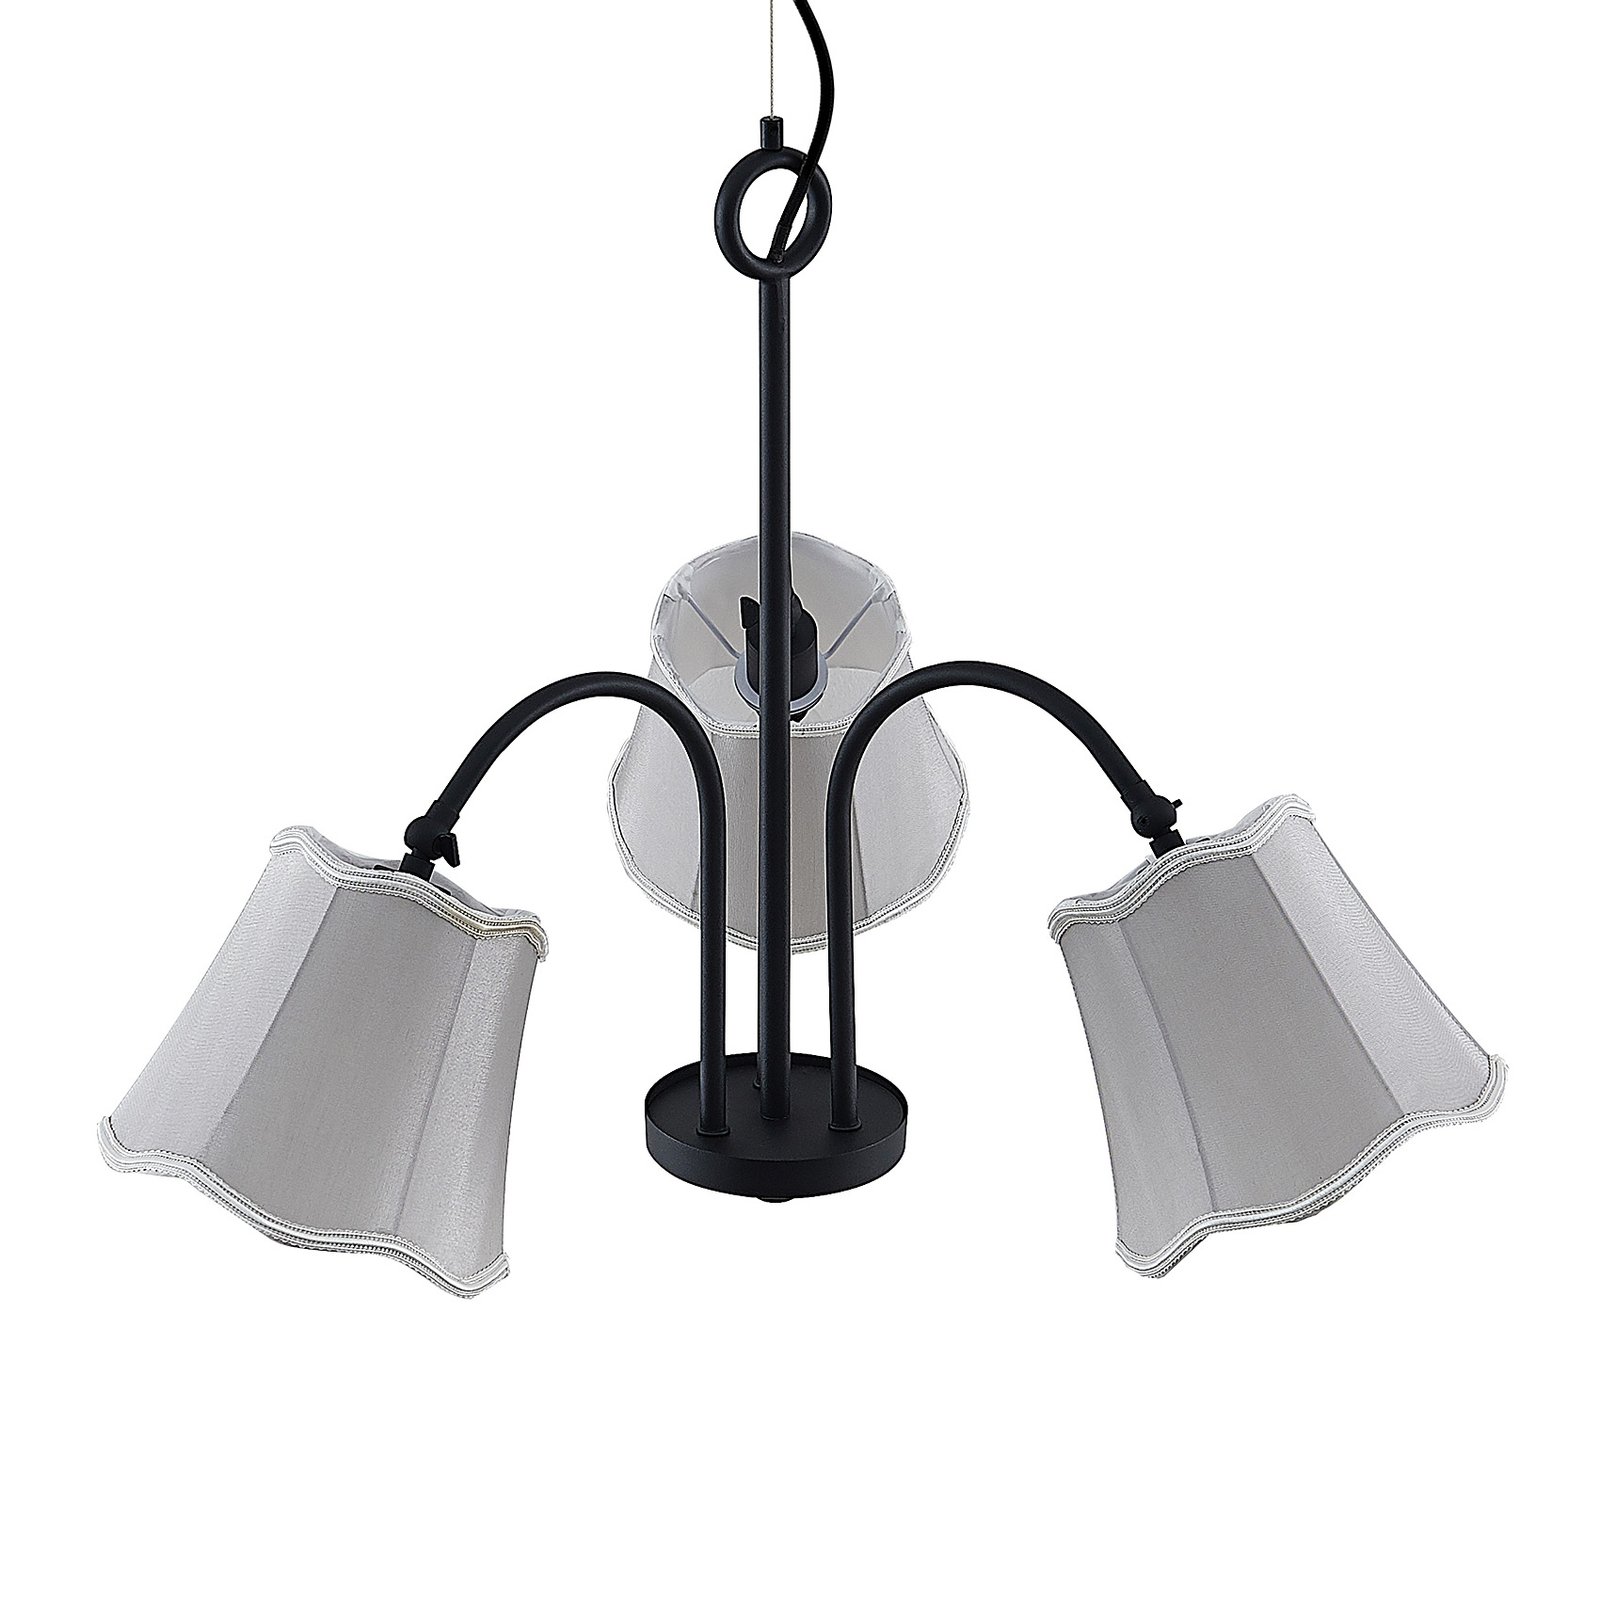 Lucande Binta hanglamp, 3-lamps, zilvergrijs